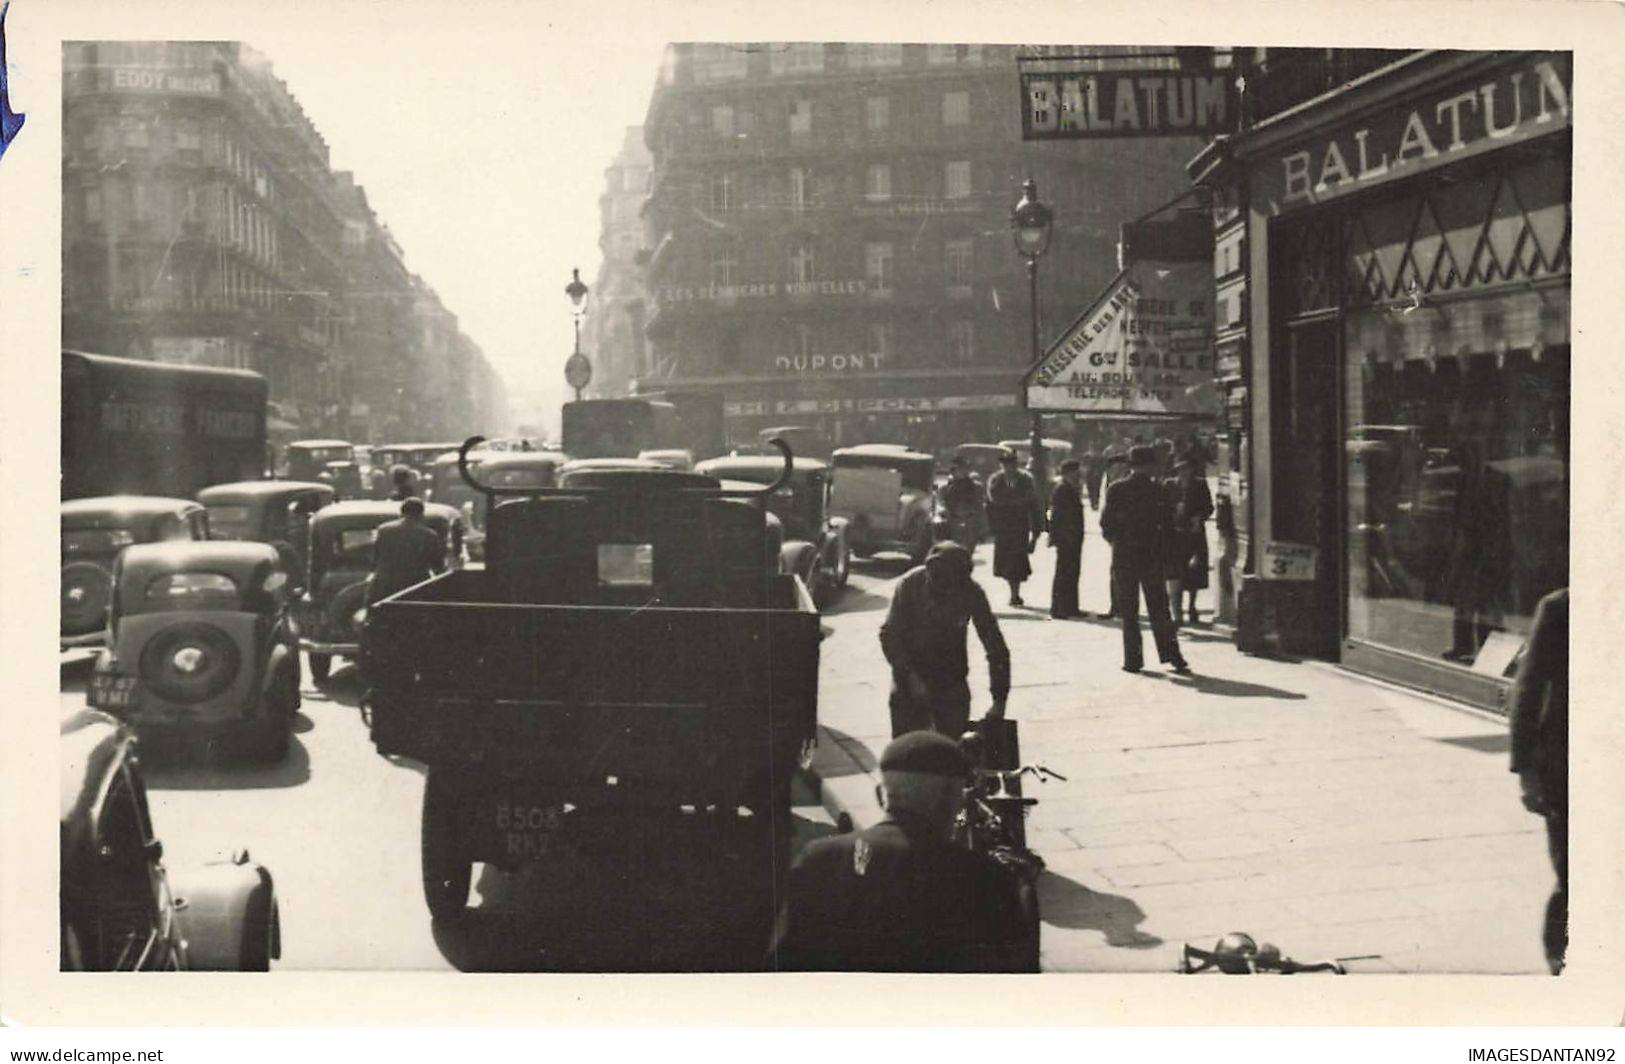 75003 PARIS #FG56560 CARREFOUR TURBIGO ET RUE REAUMUR CARTE PHOTO SERVICE TECHNIQUE PLAN 1943 - District 03